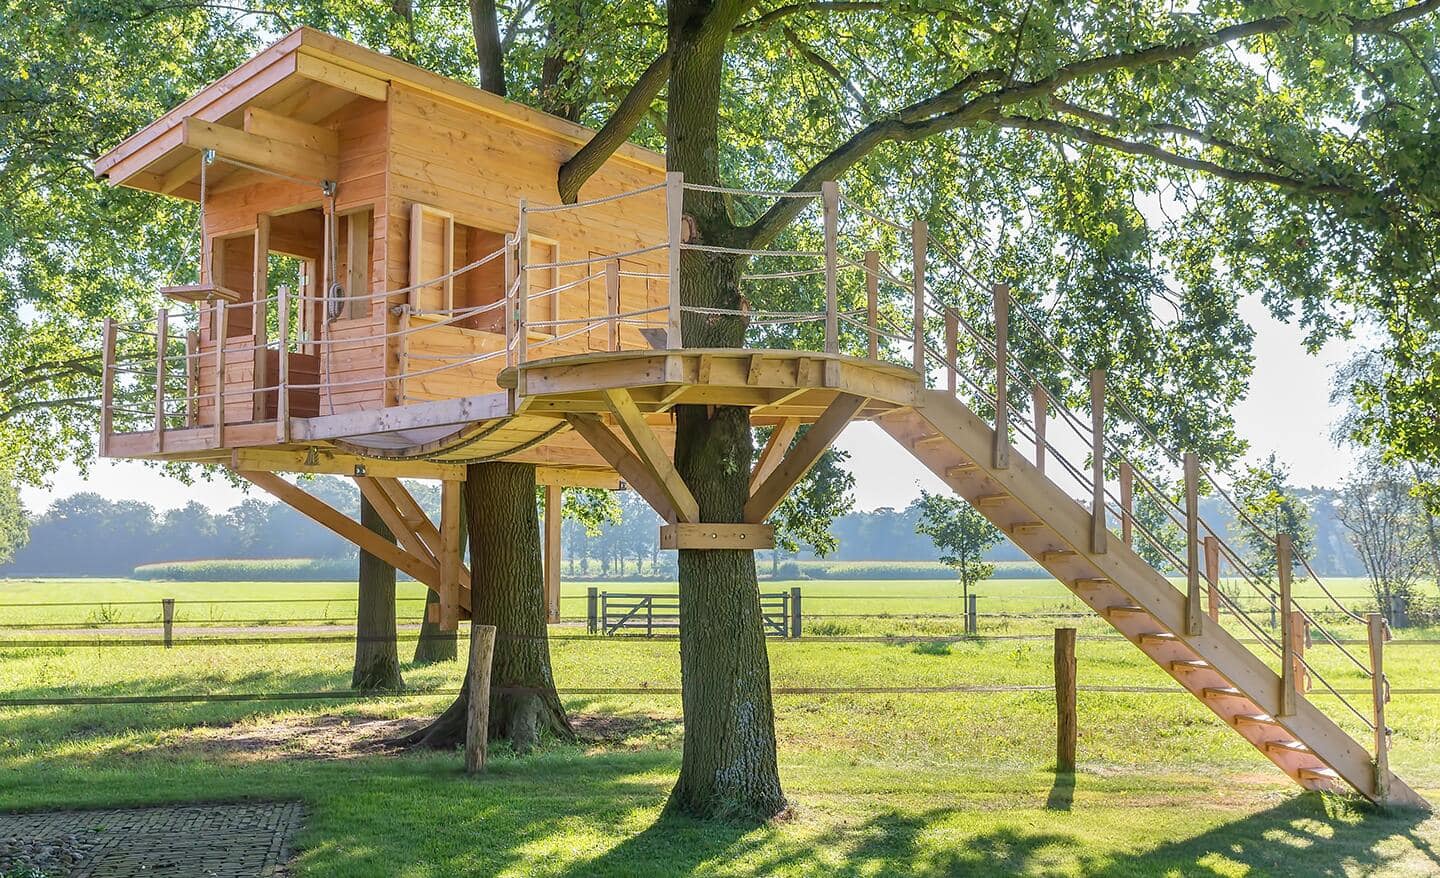 Treehouse in a backyard